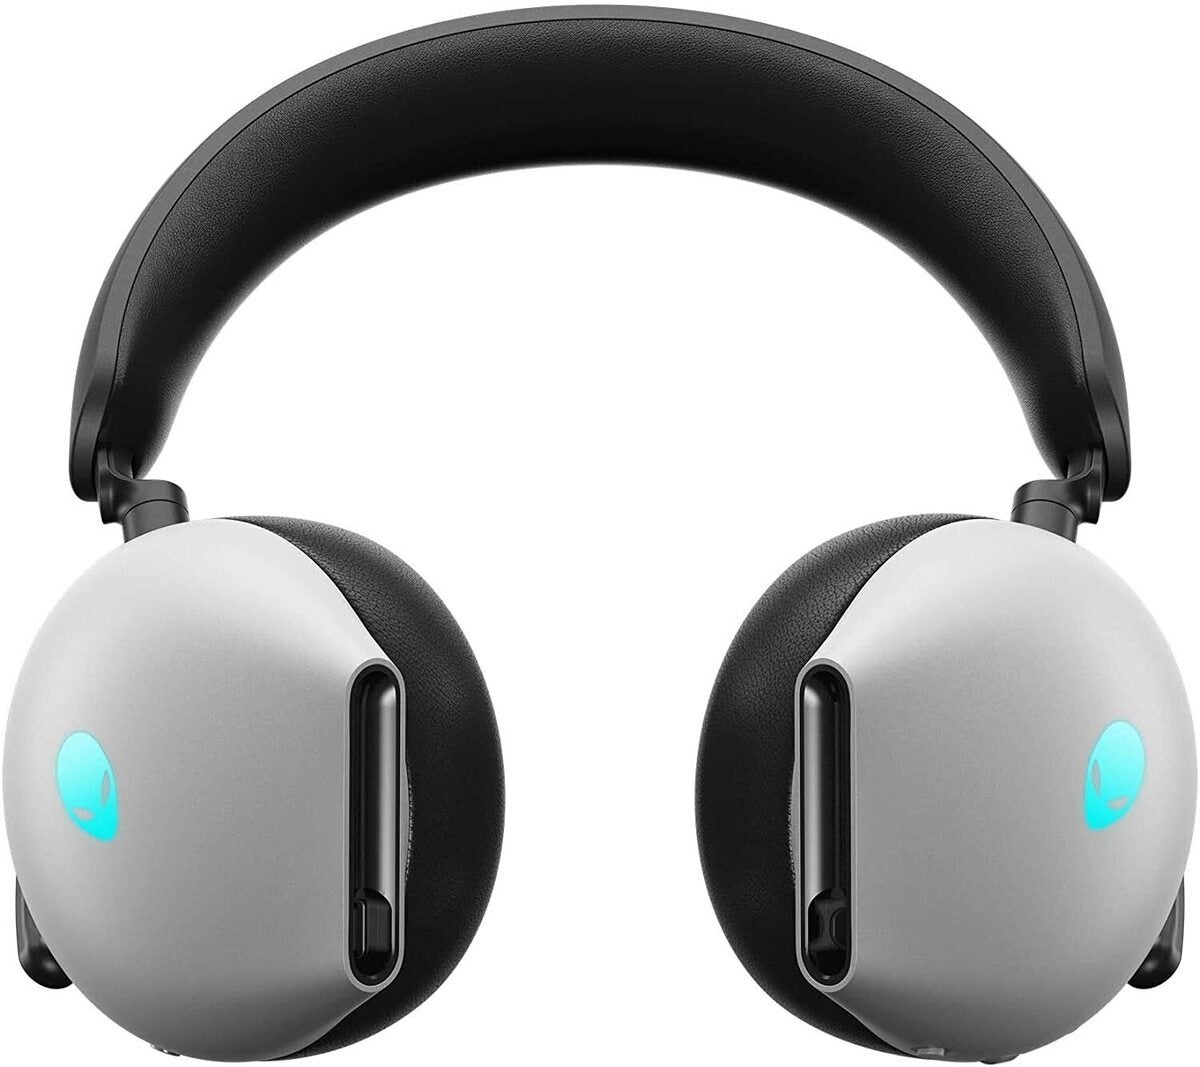 Alienware headphones